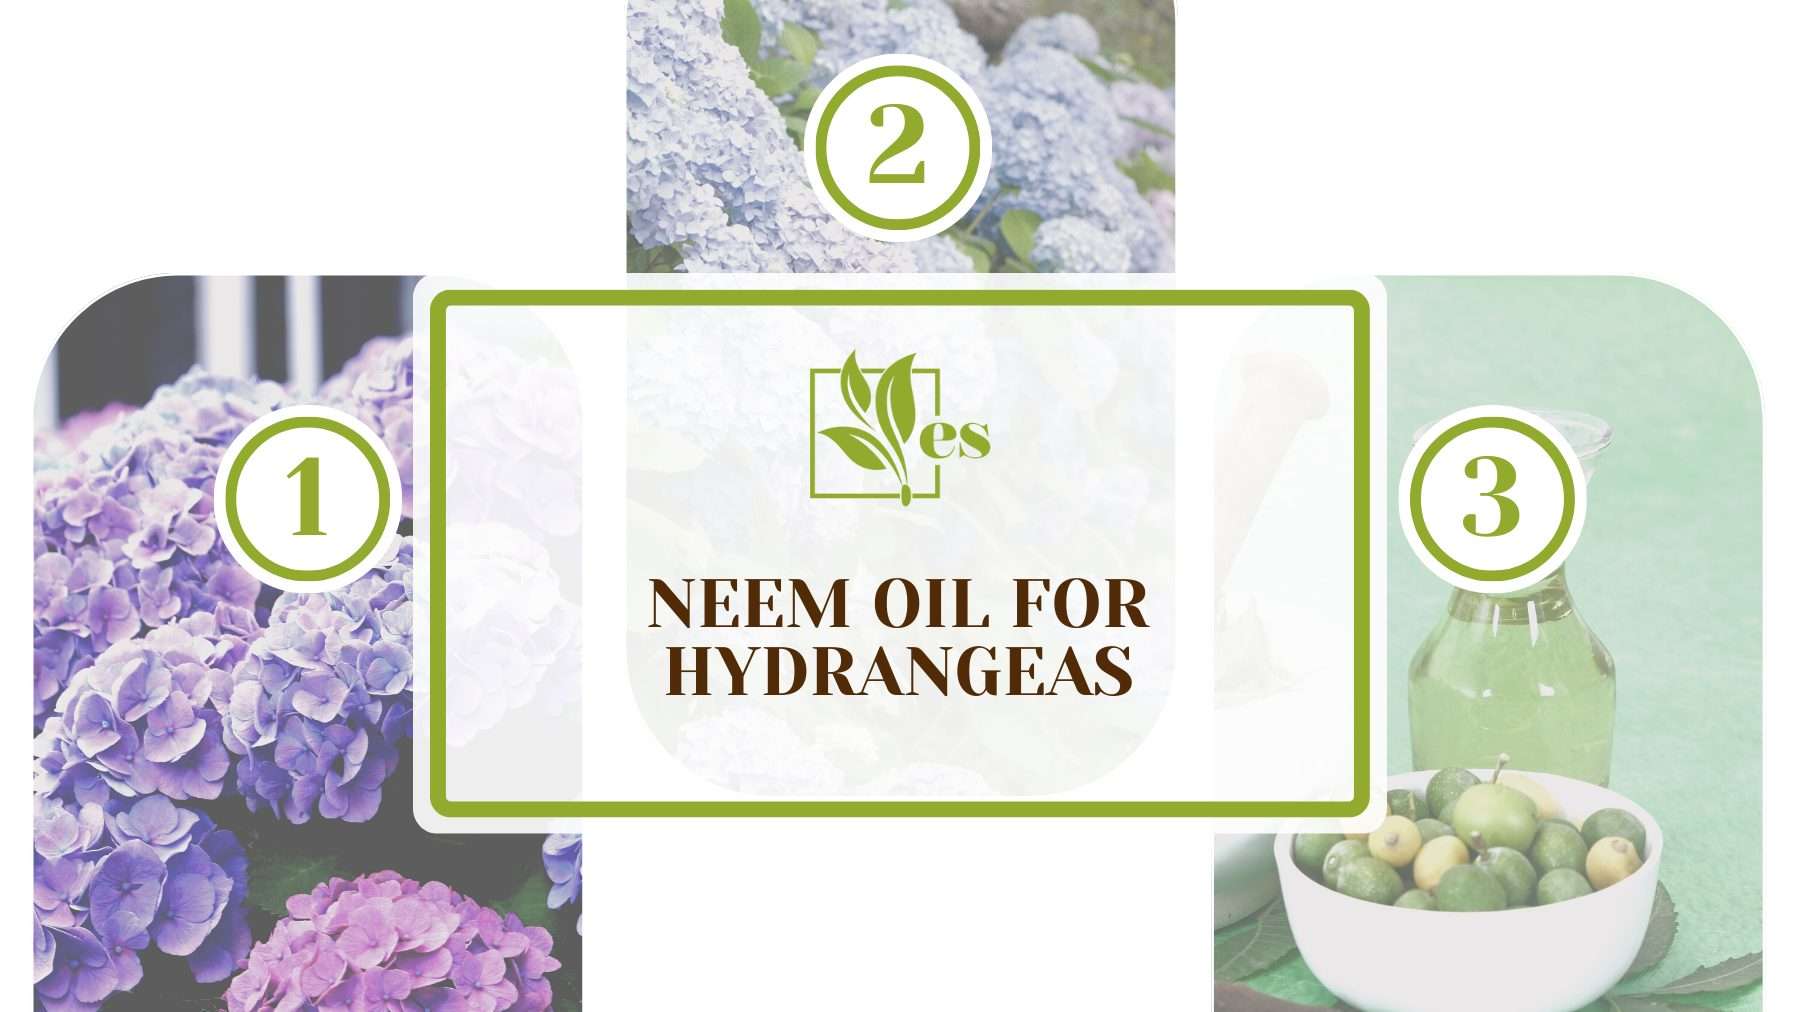 Neem Oil for Hydrangeas